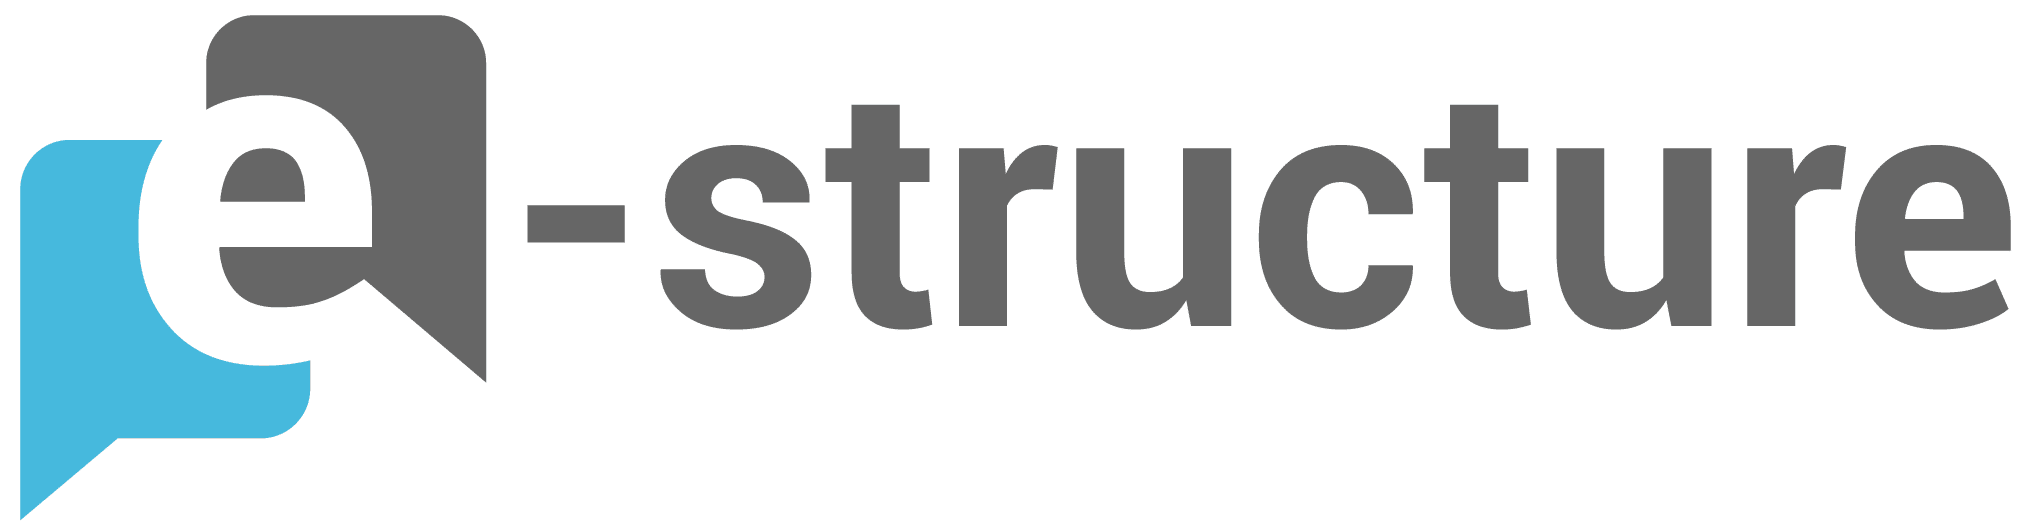 e-structure logo